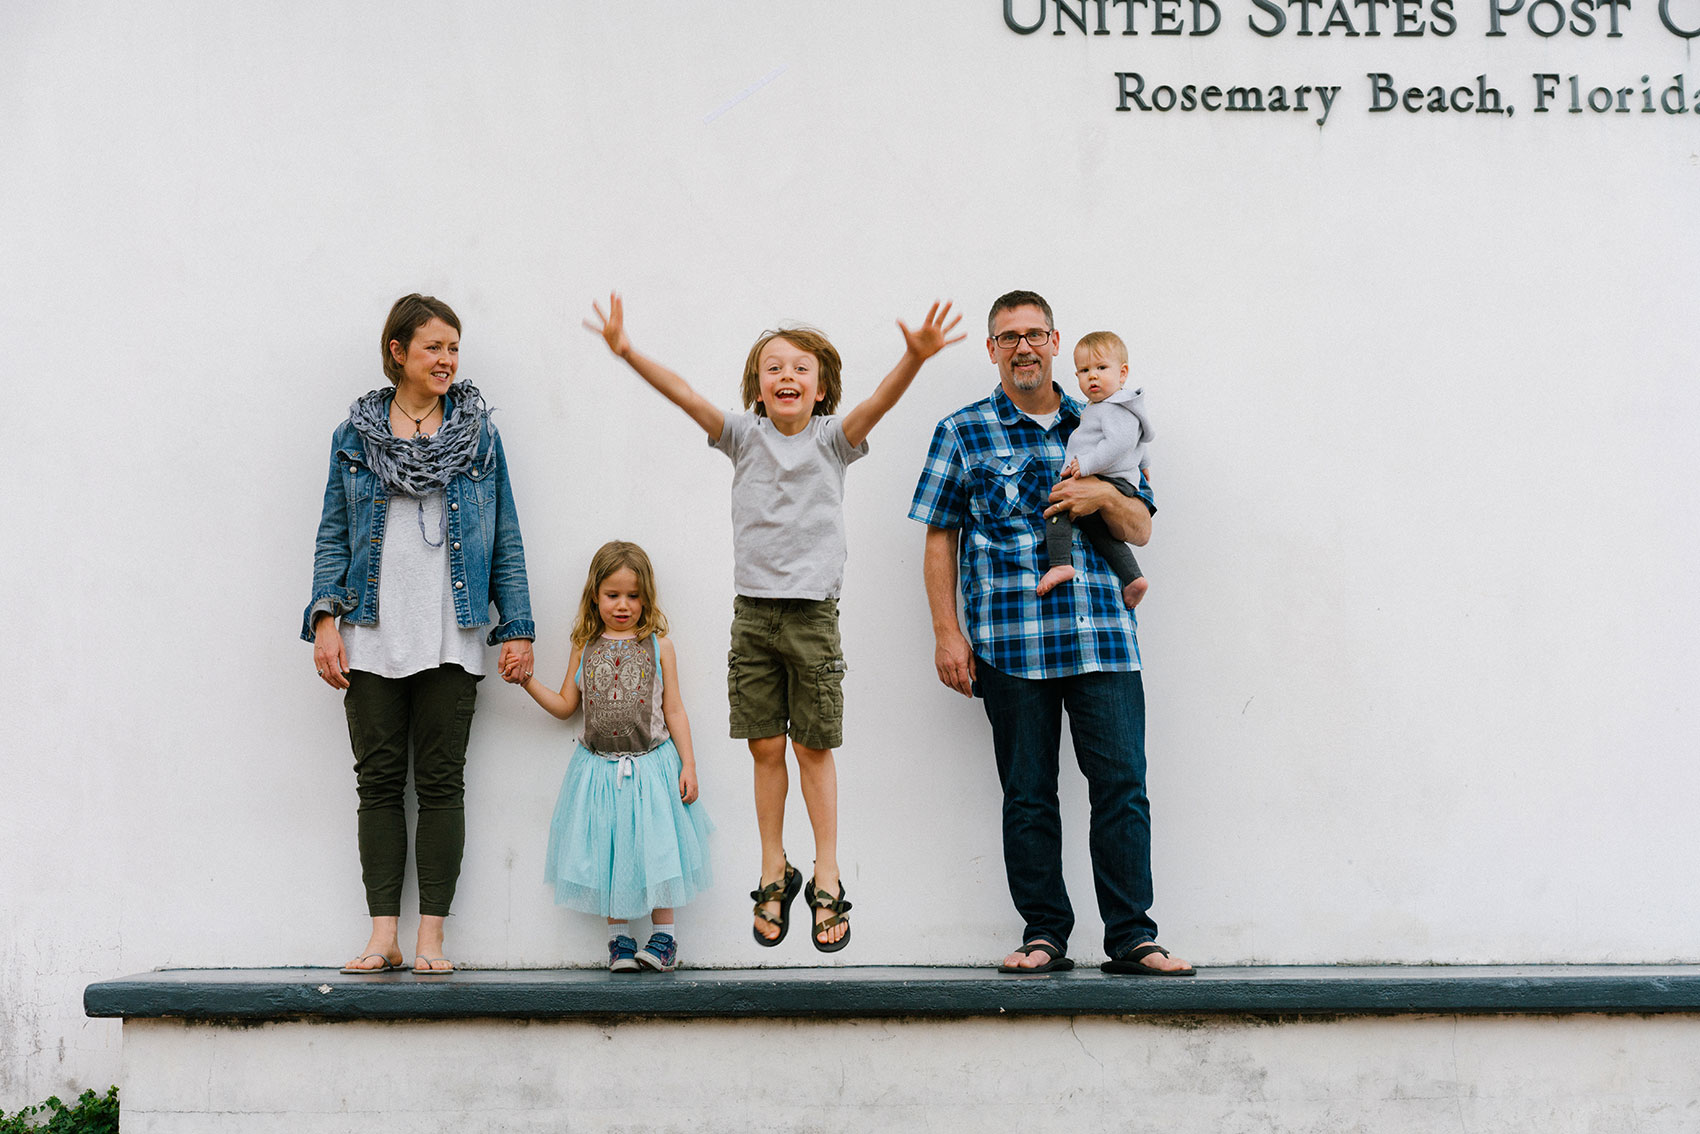 family photos at rosemary beach post office